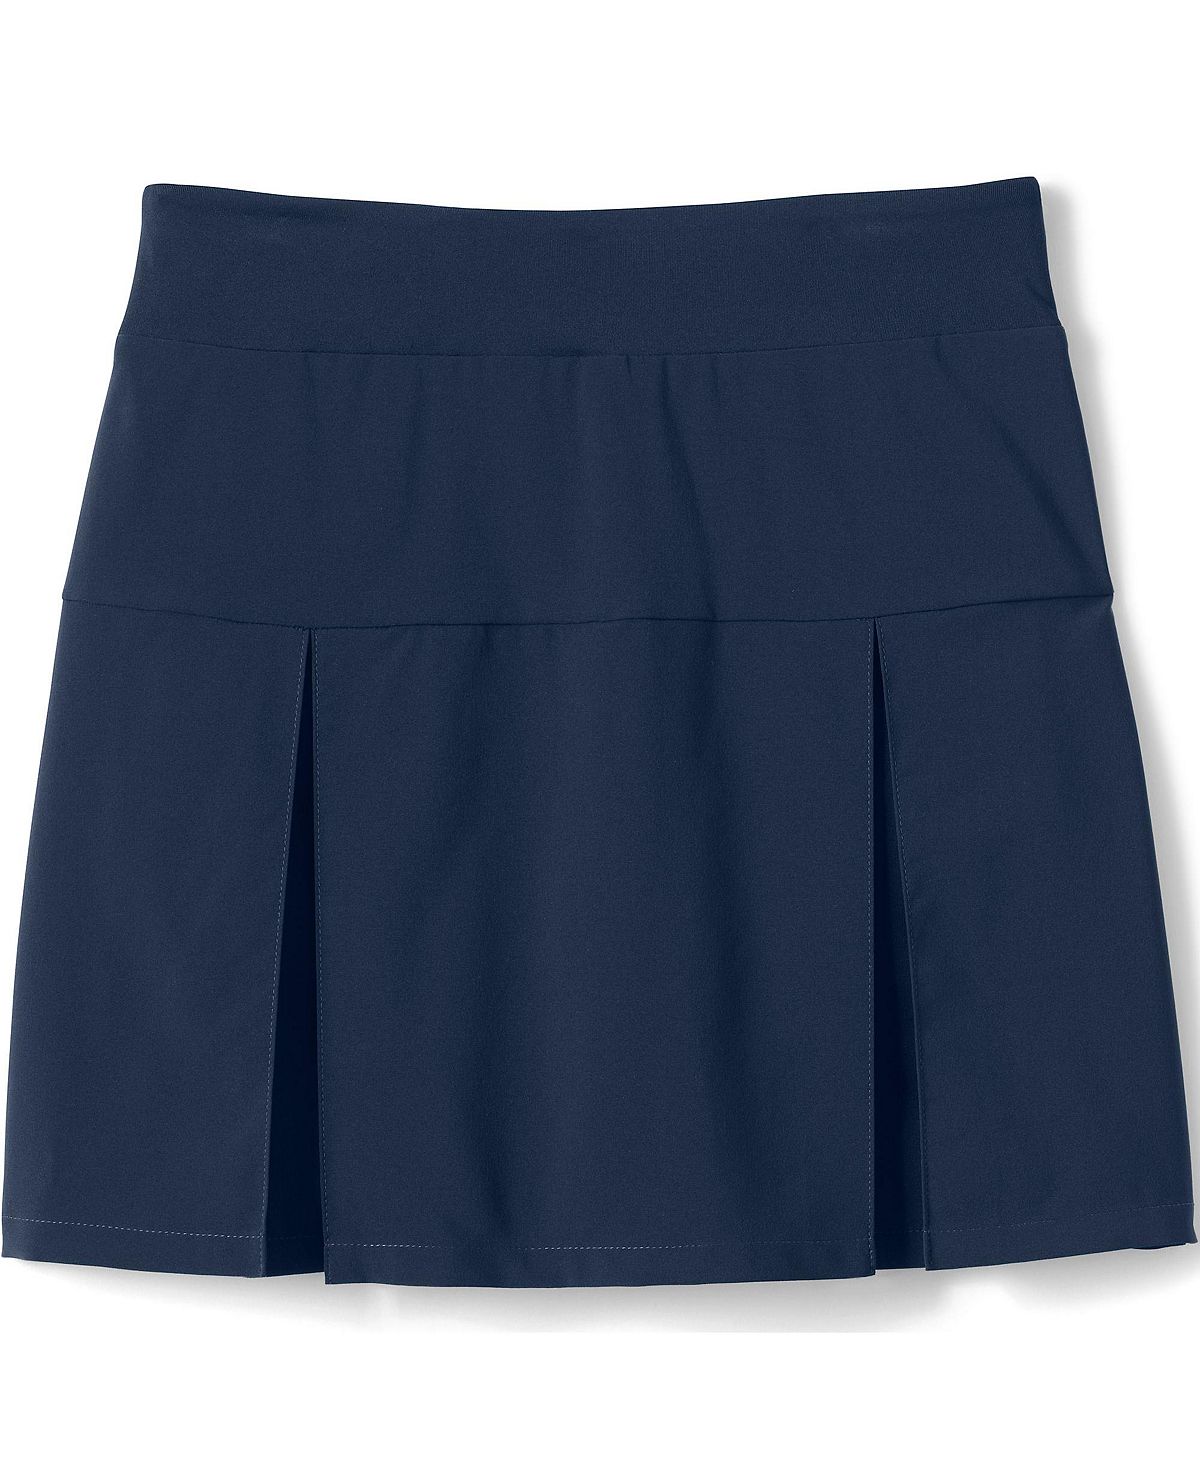 Школьная форма Lands' End, активная юбка-юбка выше колена для девочек Lands' End цена и фото